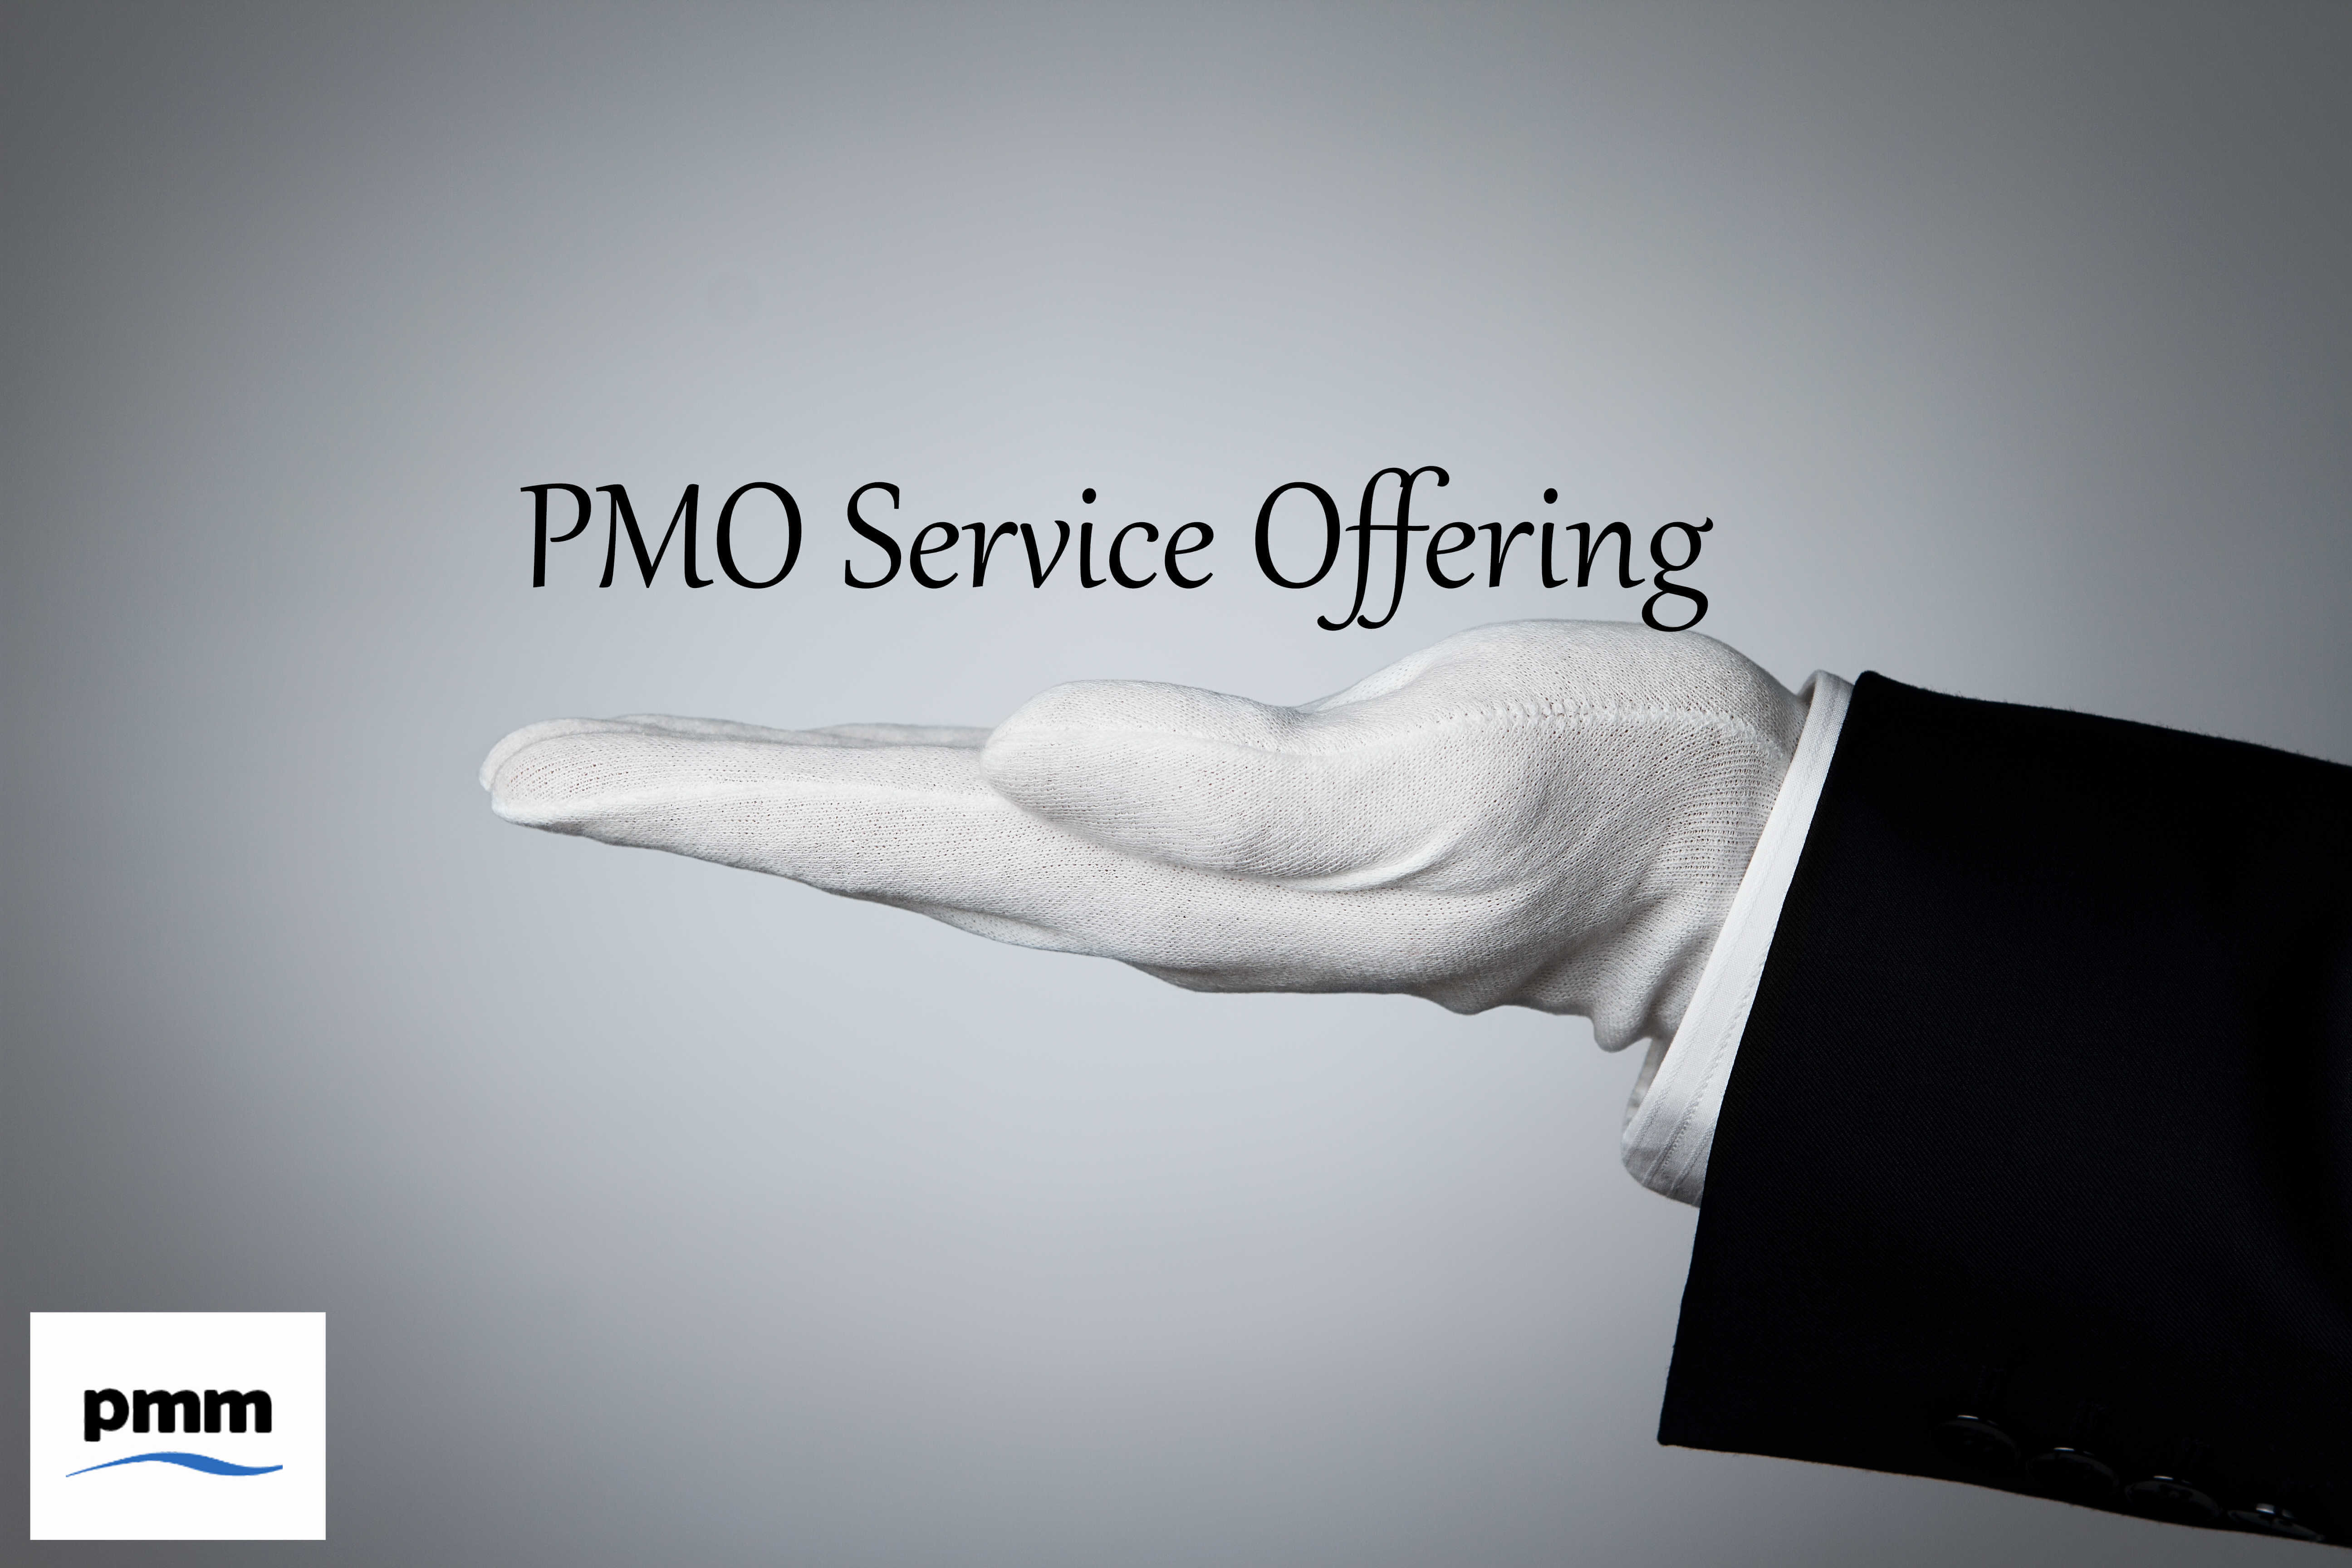 Providing a PMO service